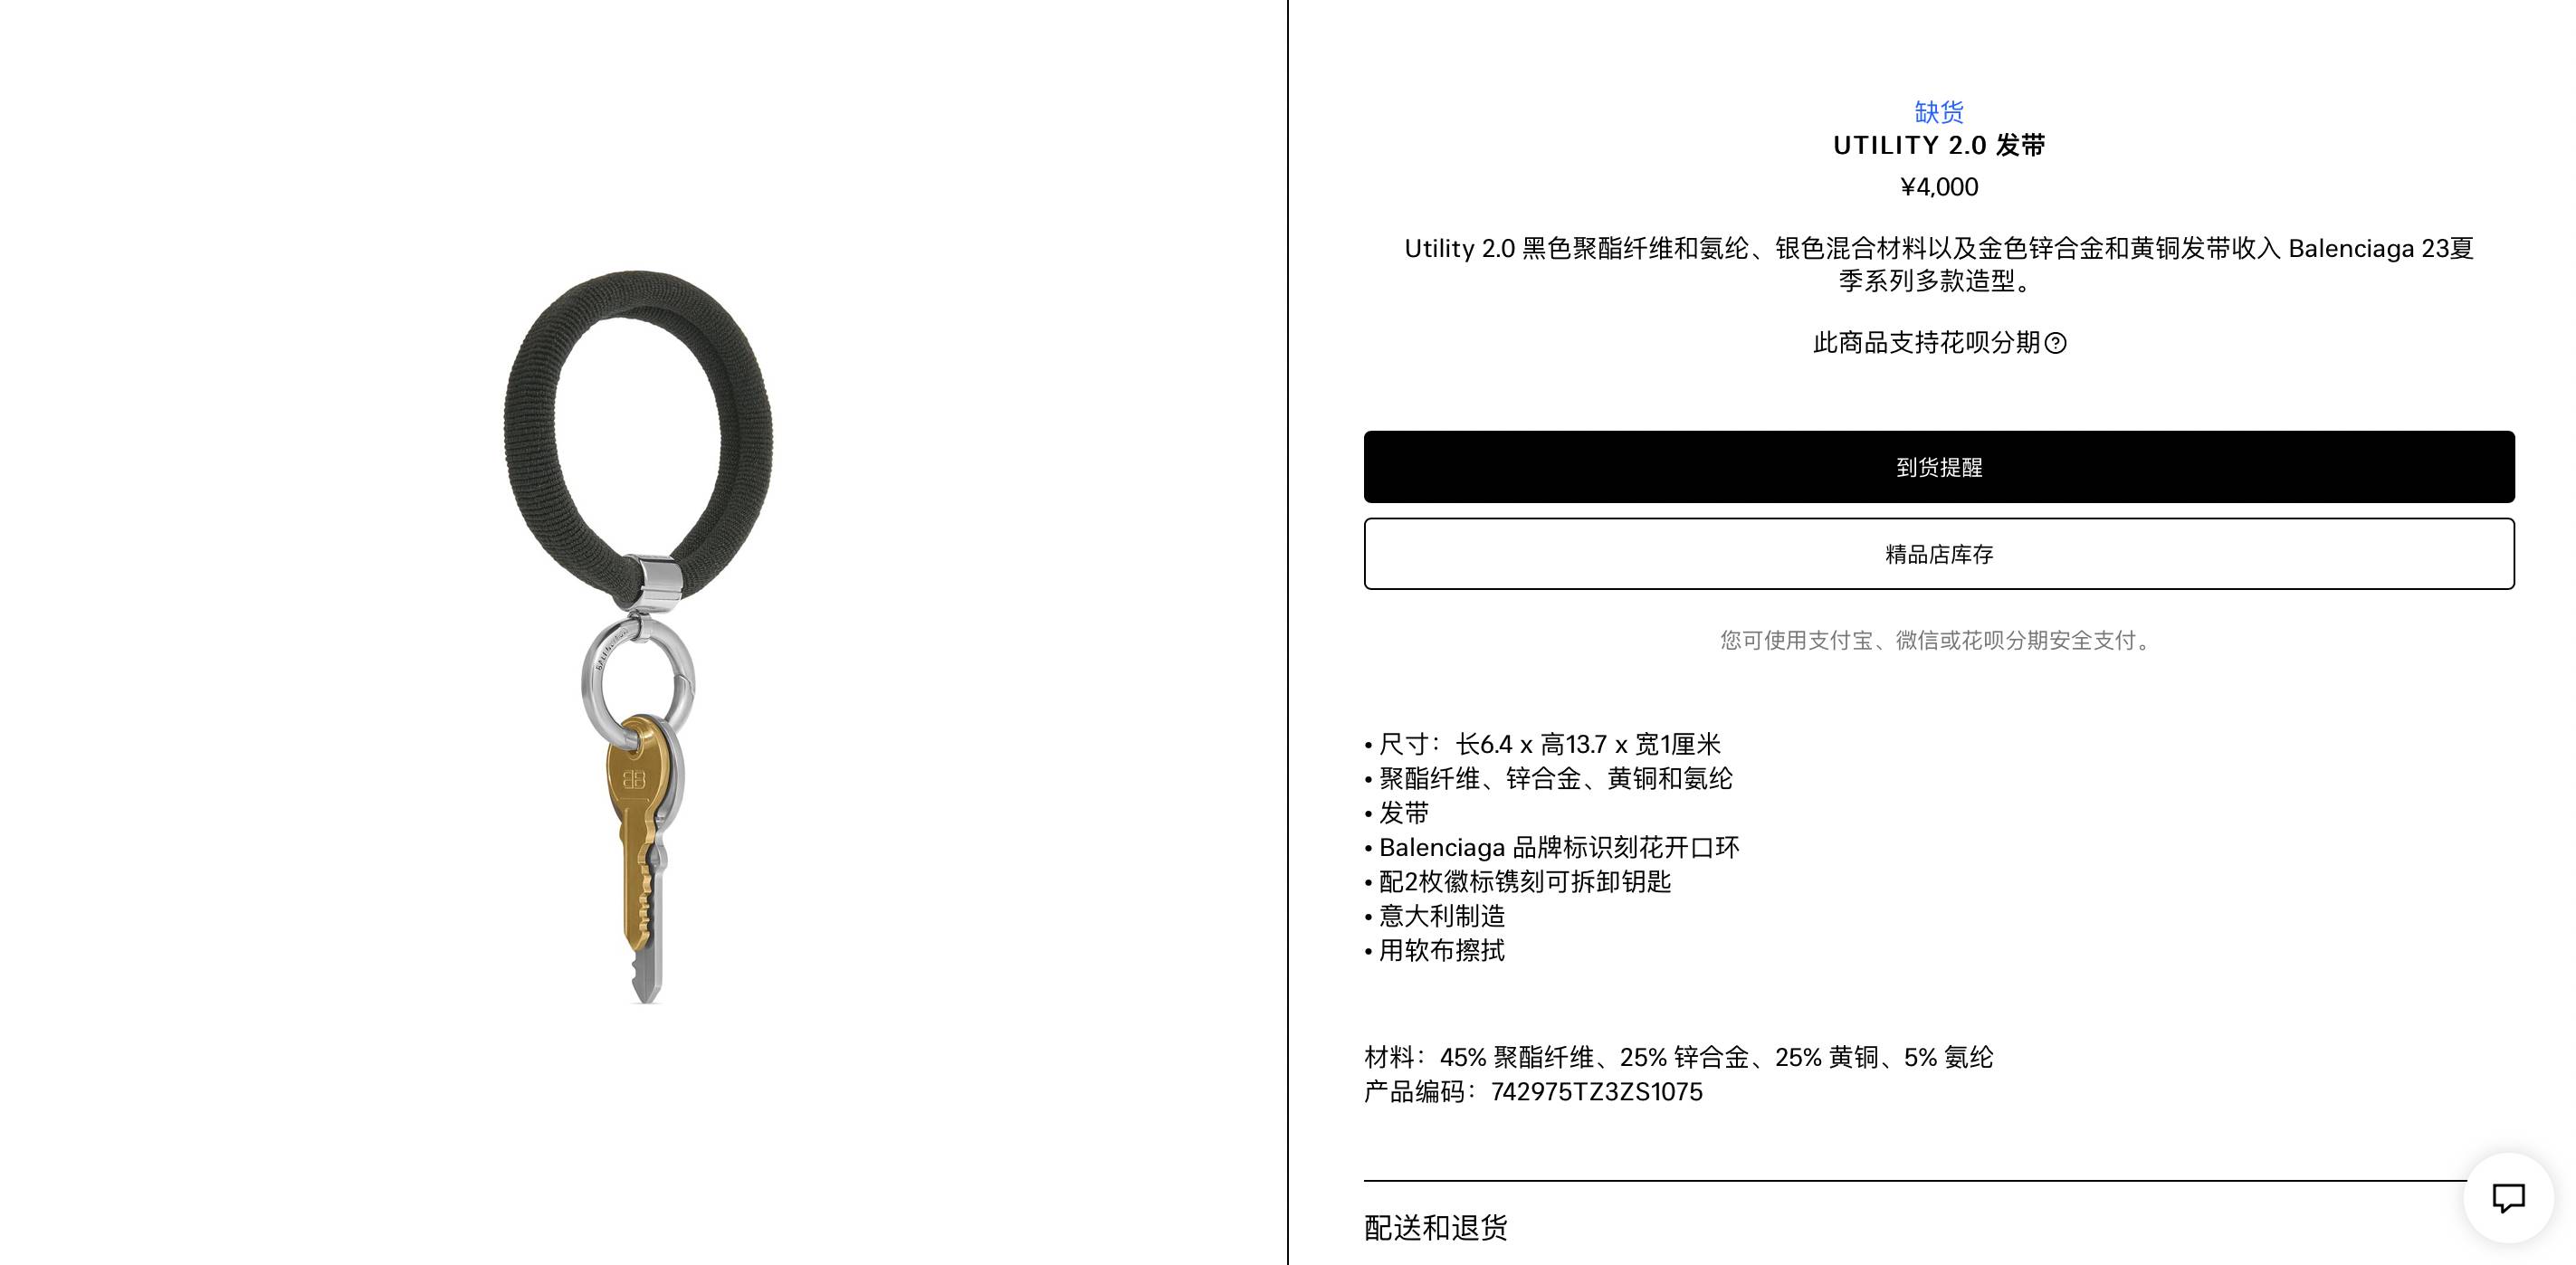 知名時尚品牌巴黎世家（Balenciaga）近日推出一款髮圈，售價高達人民幣4000元（約新台幣1萬7700元），該商品推出後隨即在上海被搶購一空，引起網友熱議。